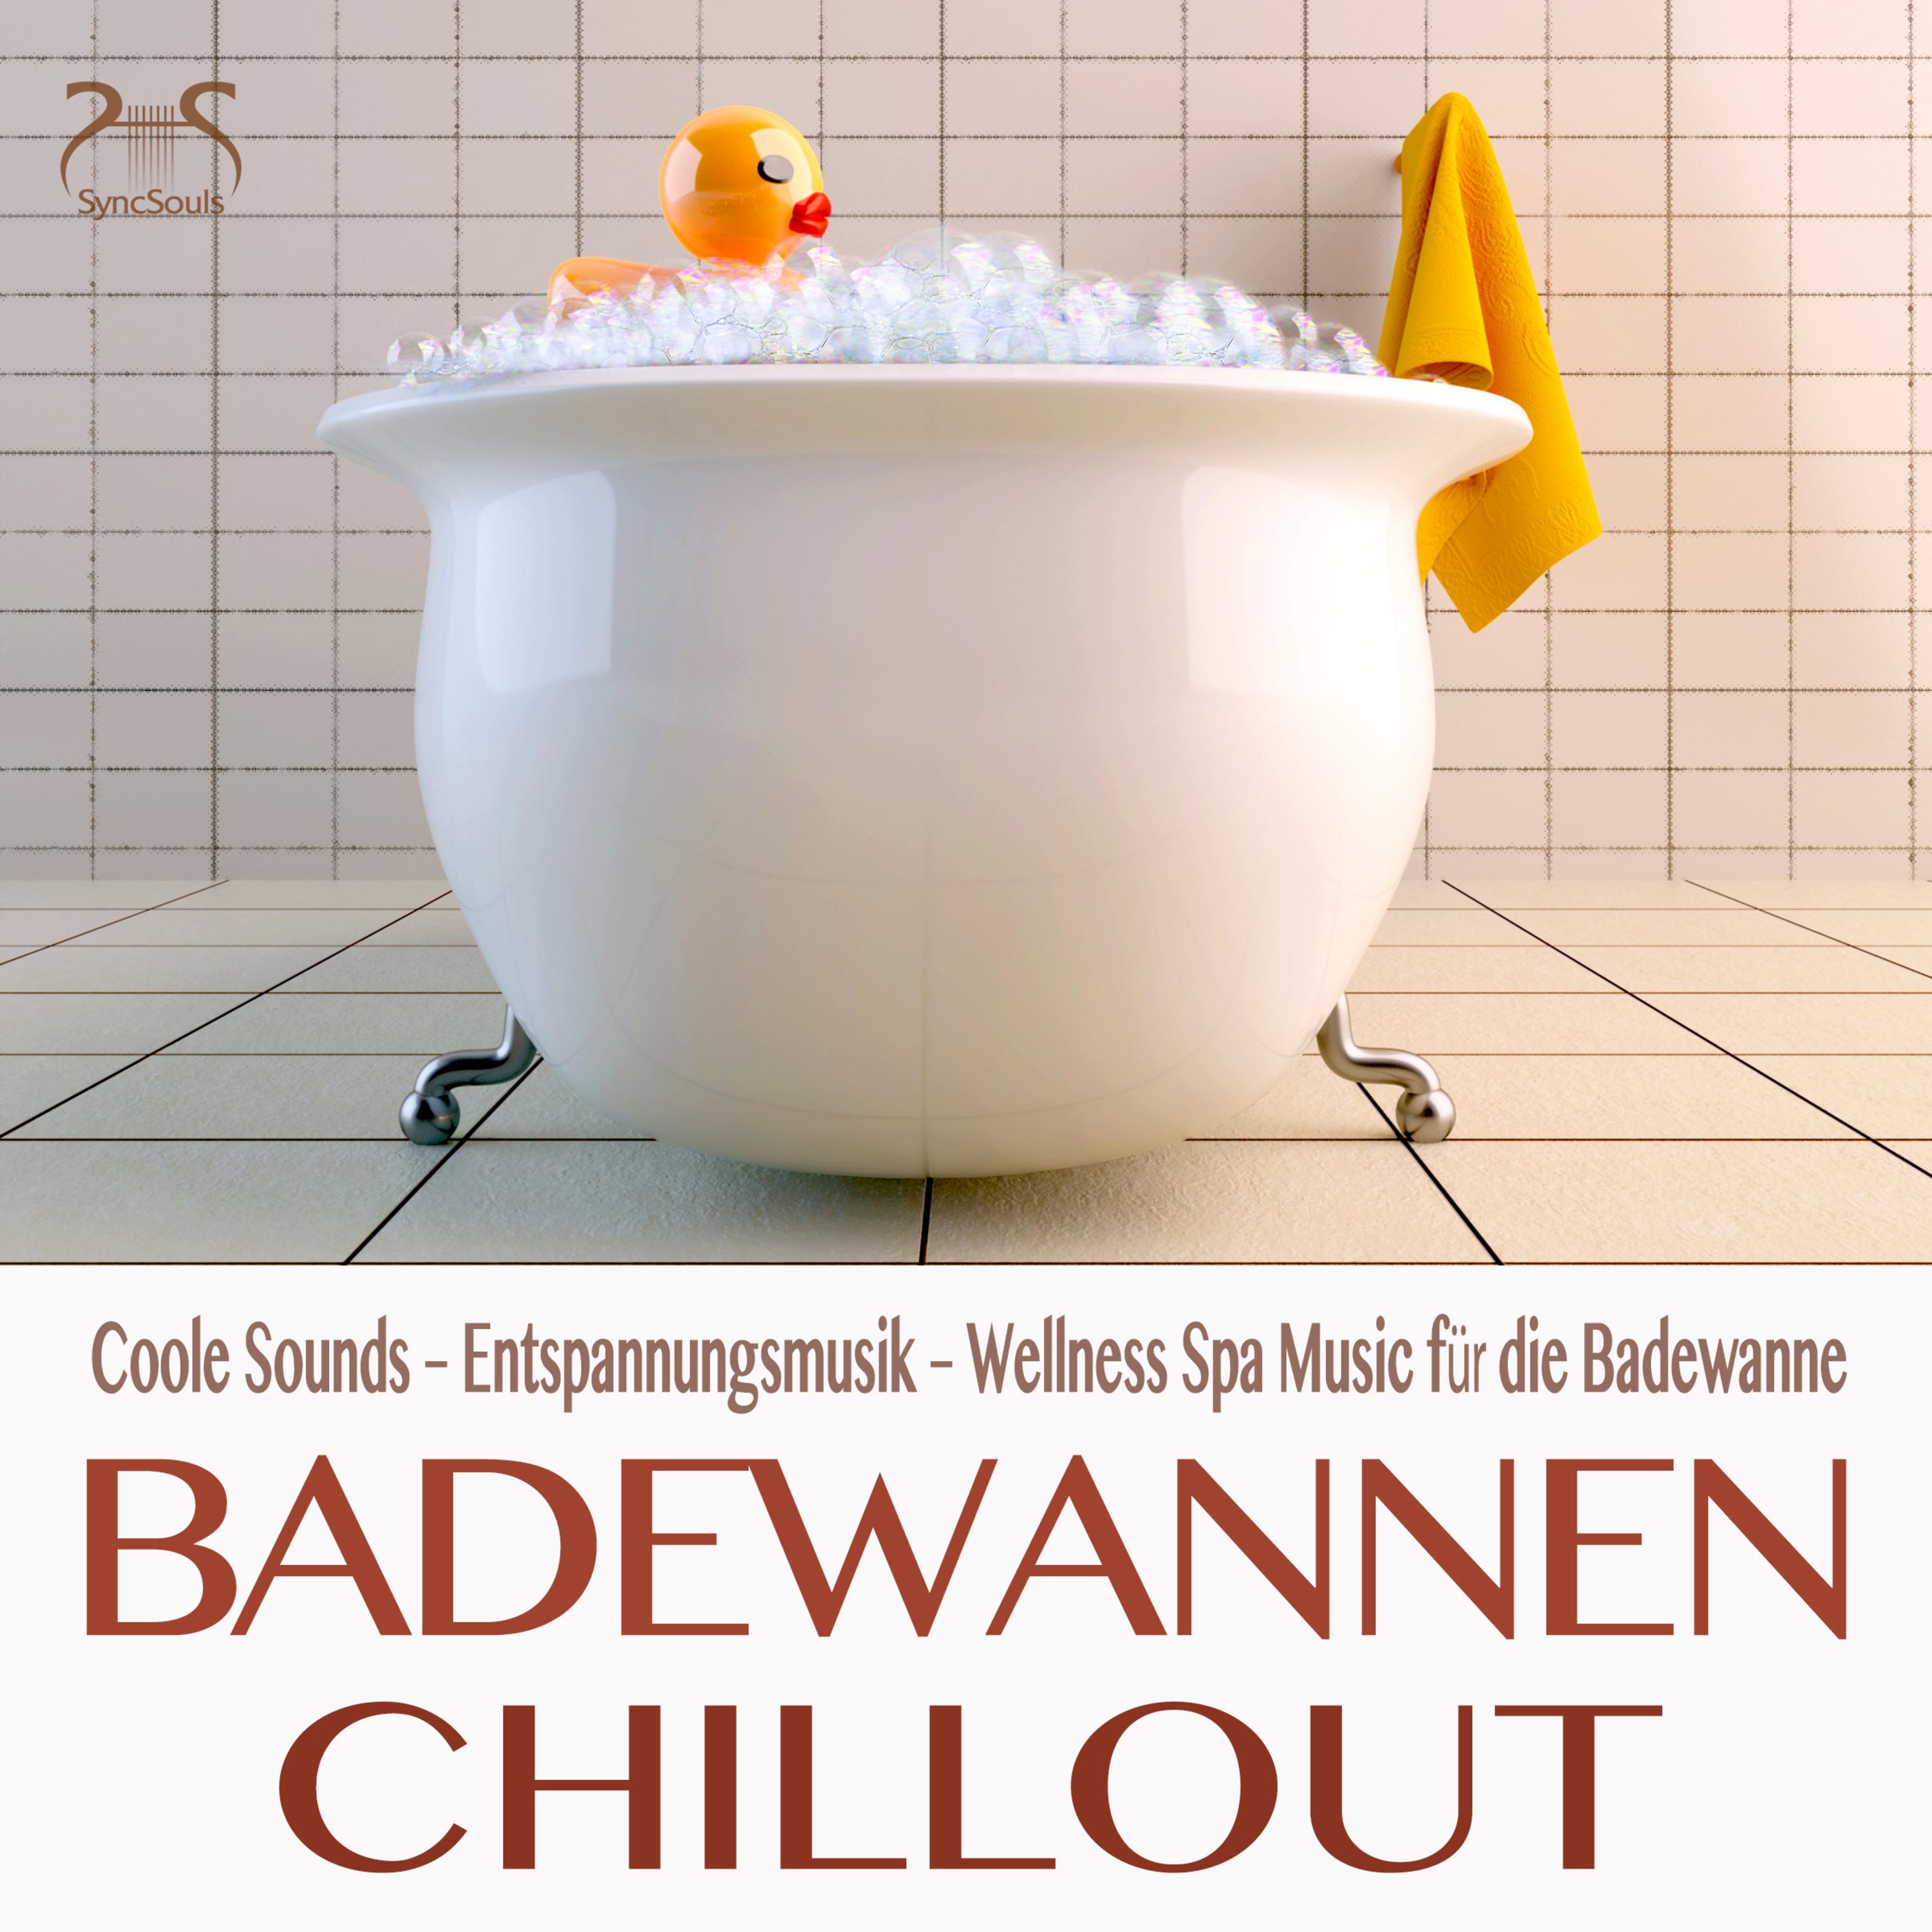 Badewannen Chillout  Coole Sounds  Entspannungsmusik  Wellness Spa Music fü r die Badewanne